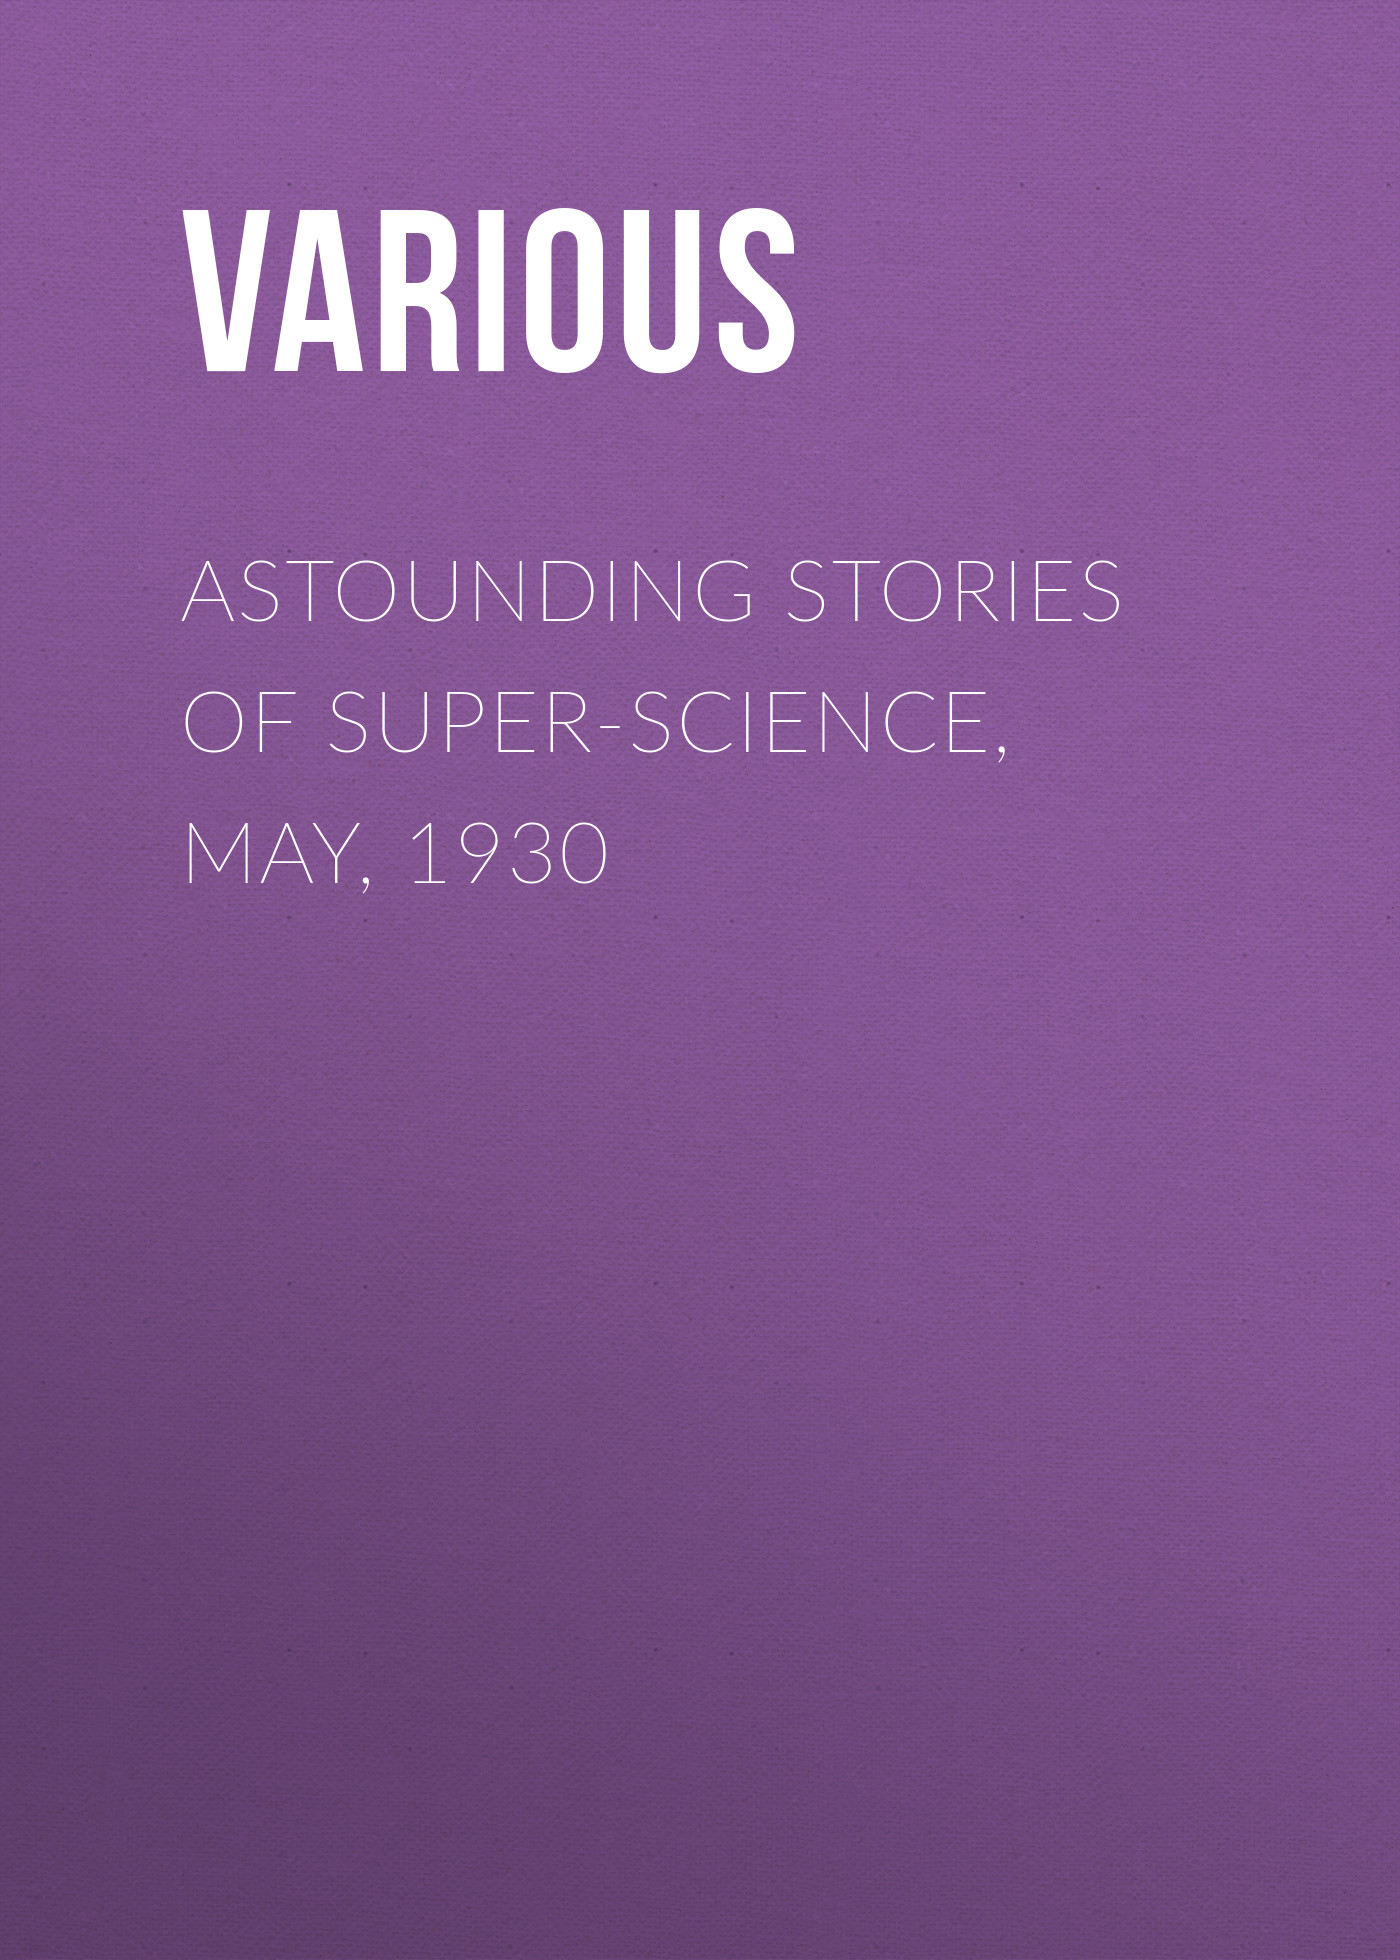 Книга Astounding Stories of Super-Science, May, 1930 из серии , созданная  Various, может относится к жанру Журналы, Зарубежная образовательная литература. Стоимость электронной книги Astounding Stories of Super-Science, May, 1930 с идентификатором 25568655 составляет 0 руб.